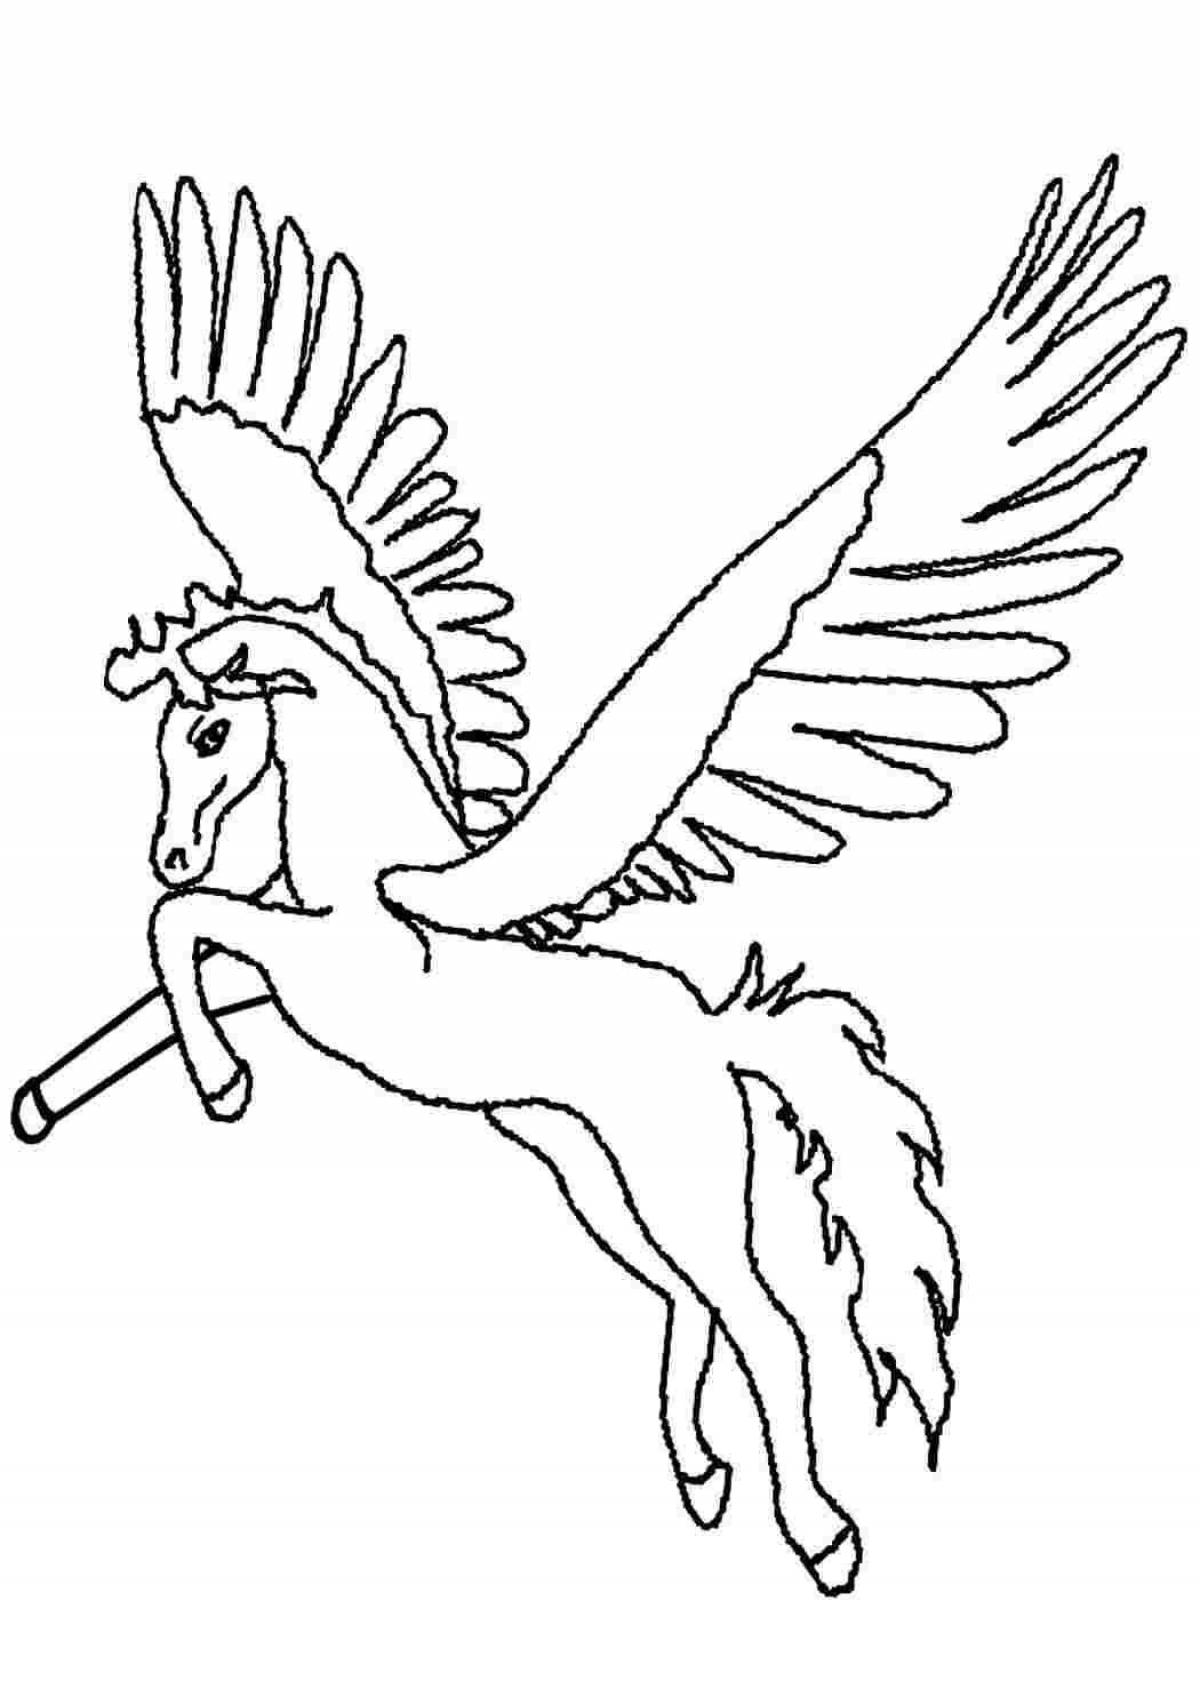 Королевская раскраска лошадь с крыльями